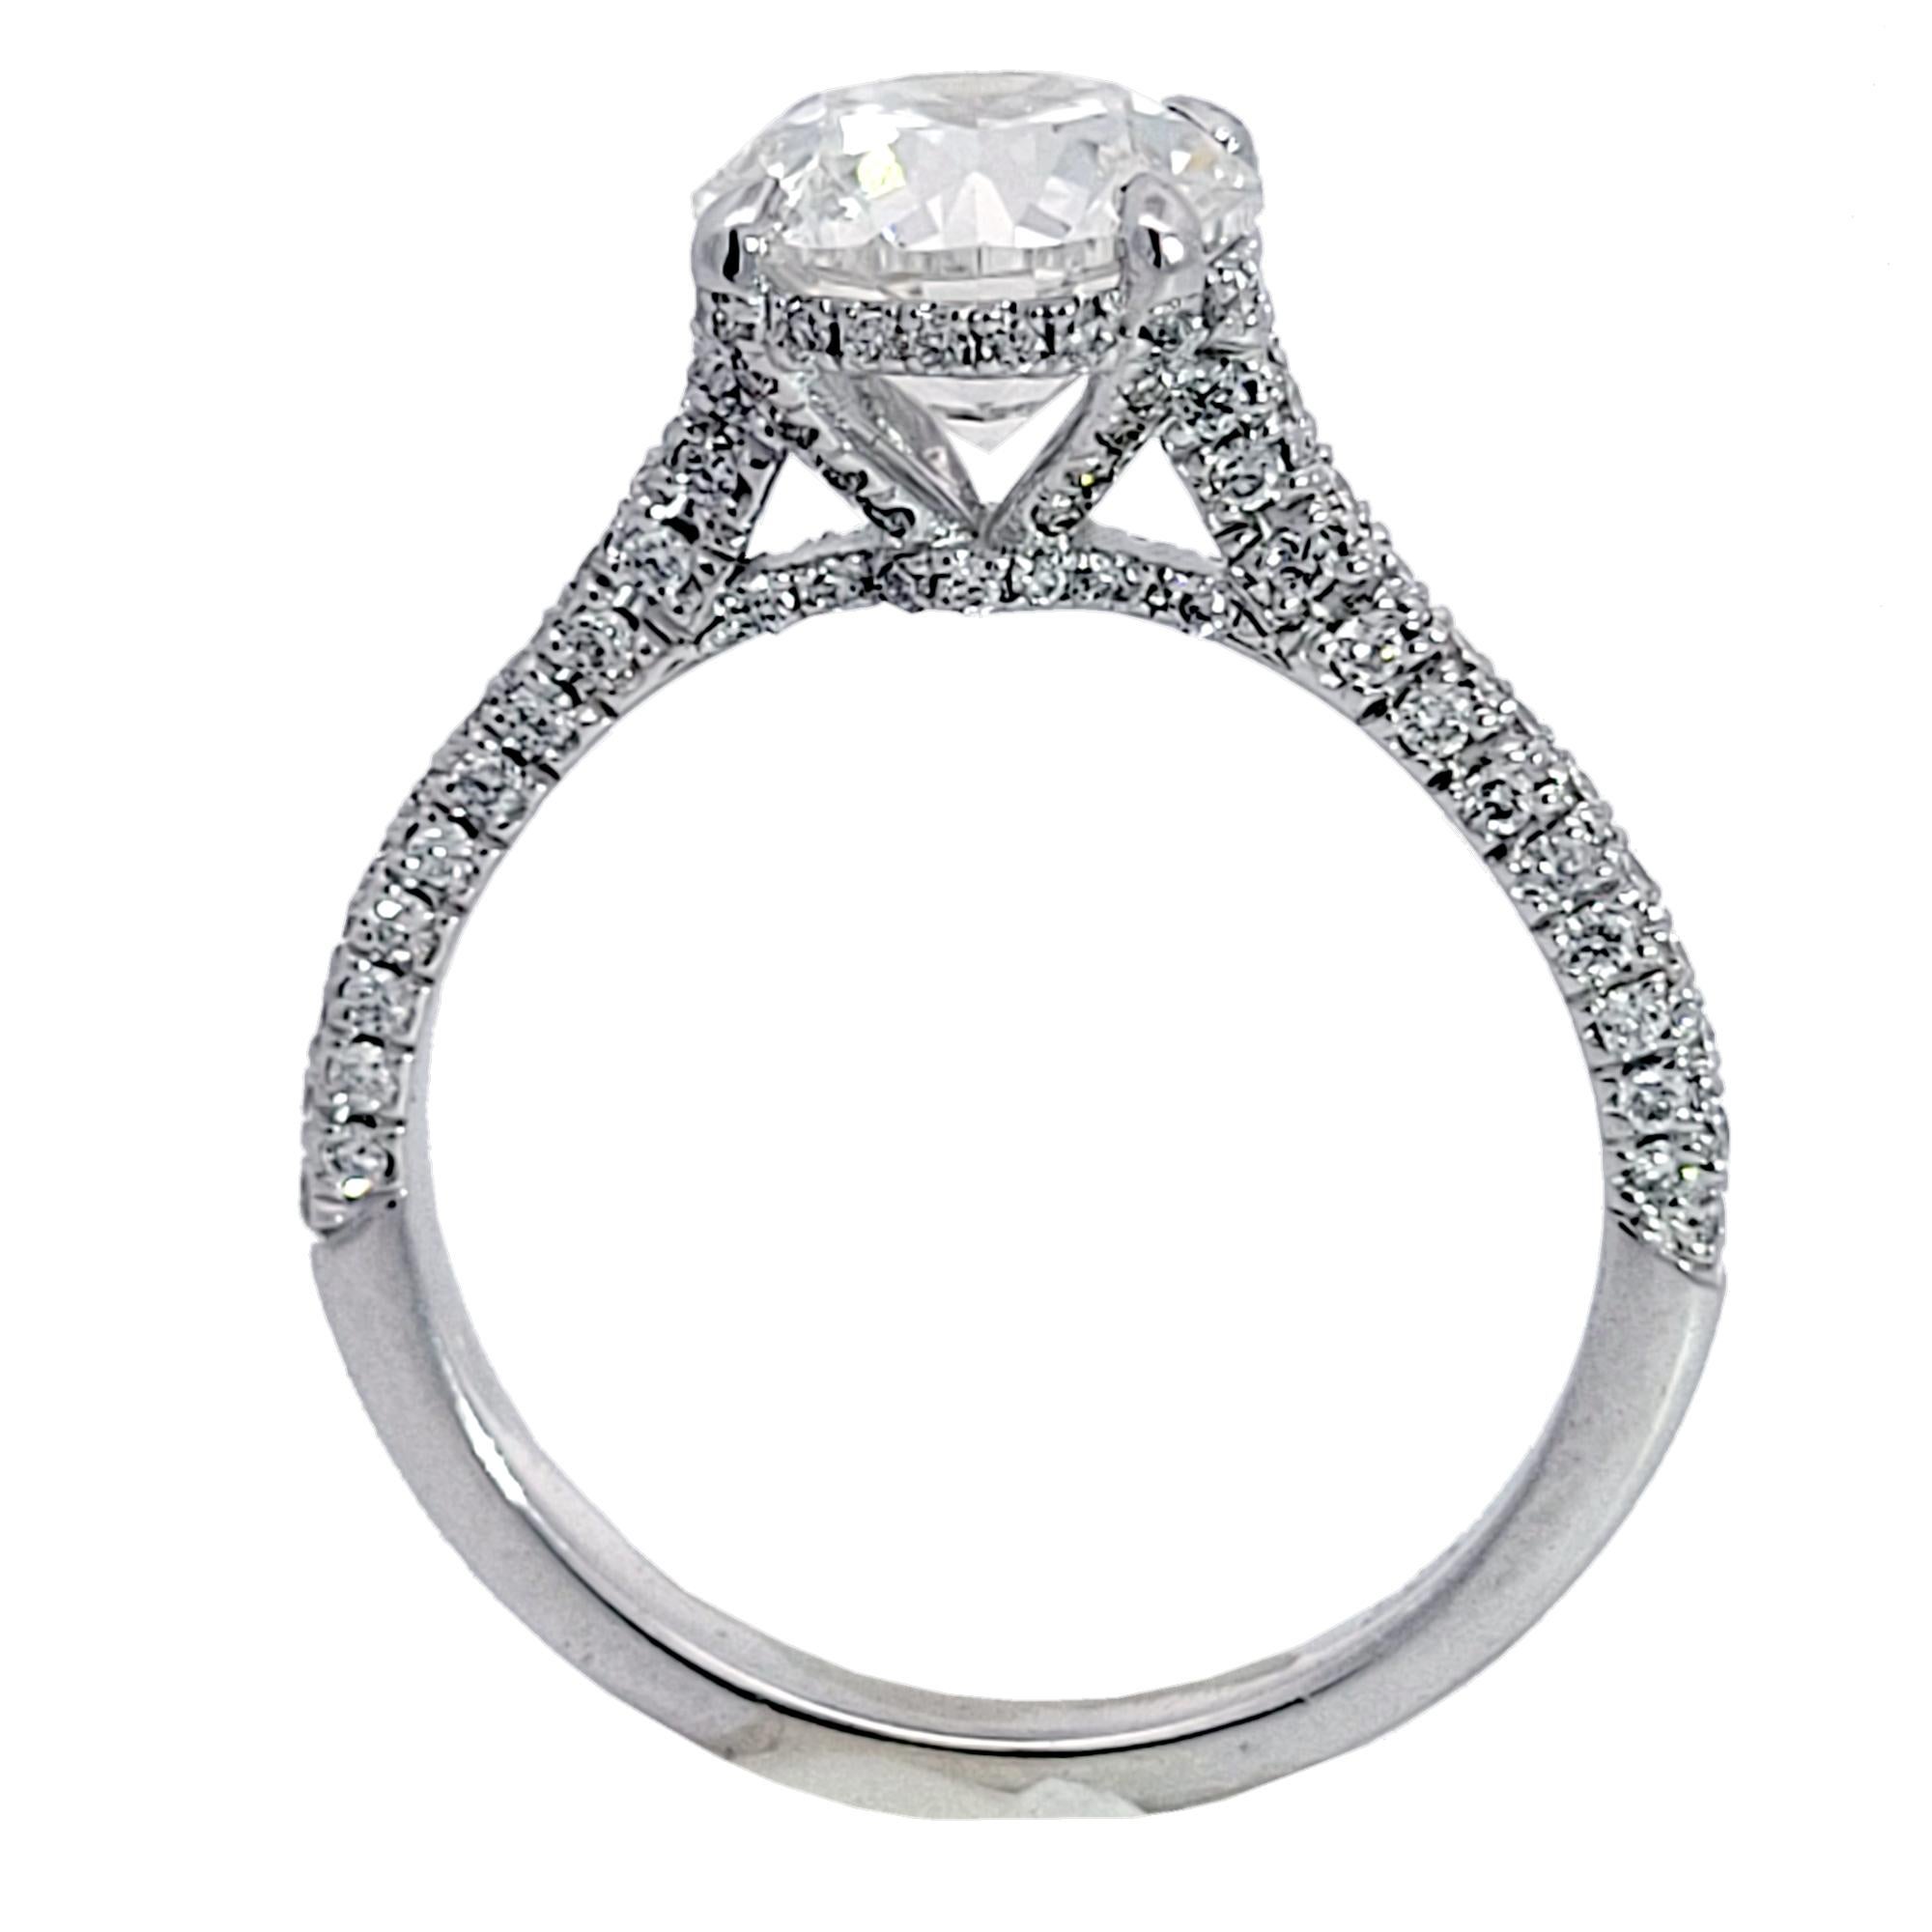 Magnifique diamant central certifié GIA de 2,01 ct de diamant rond brillant D/SI1 serti dans une bague de fiançailles en or blanc 18 carats avec pavage et halo caché. Poids total de 0.51 ct. de diamants sur le côté. La tige est sertie de pavés sur